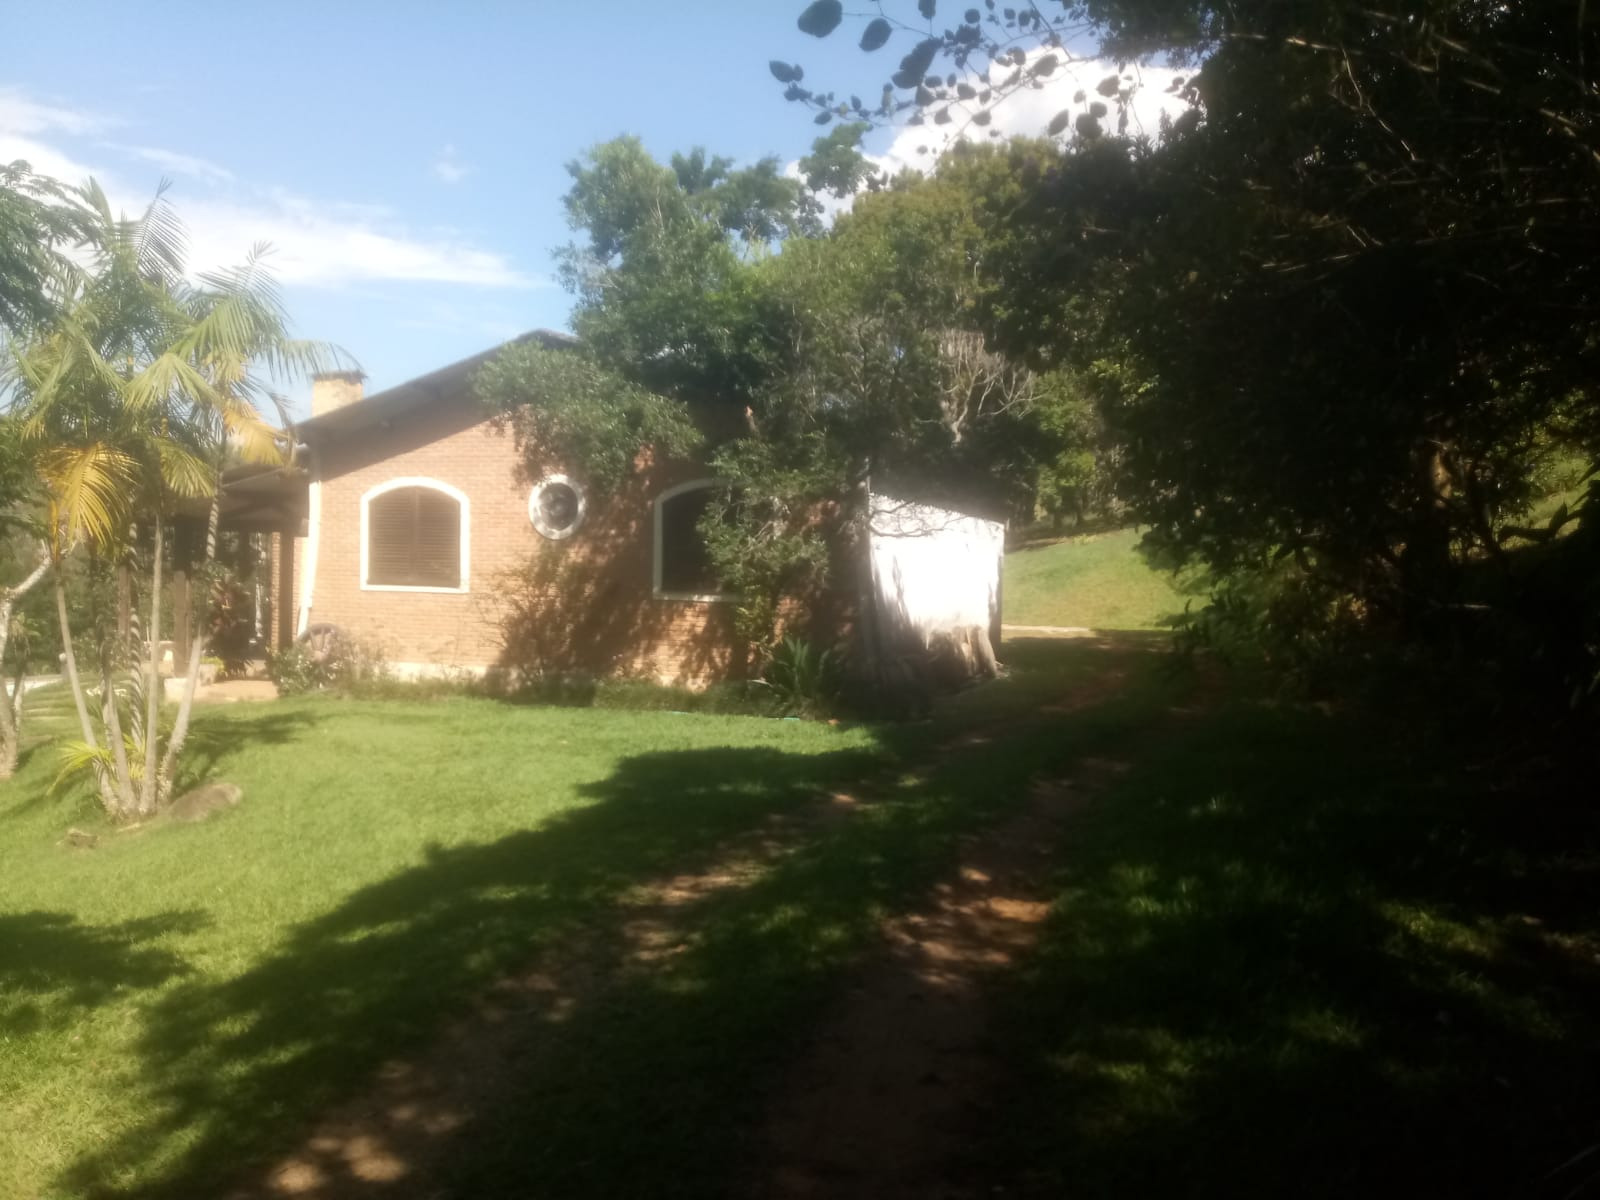 Sítio de 8 ha em São José dos Campos, SP